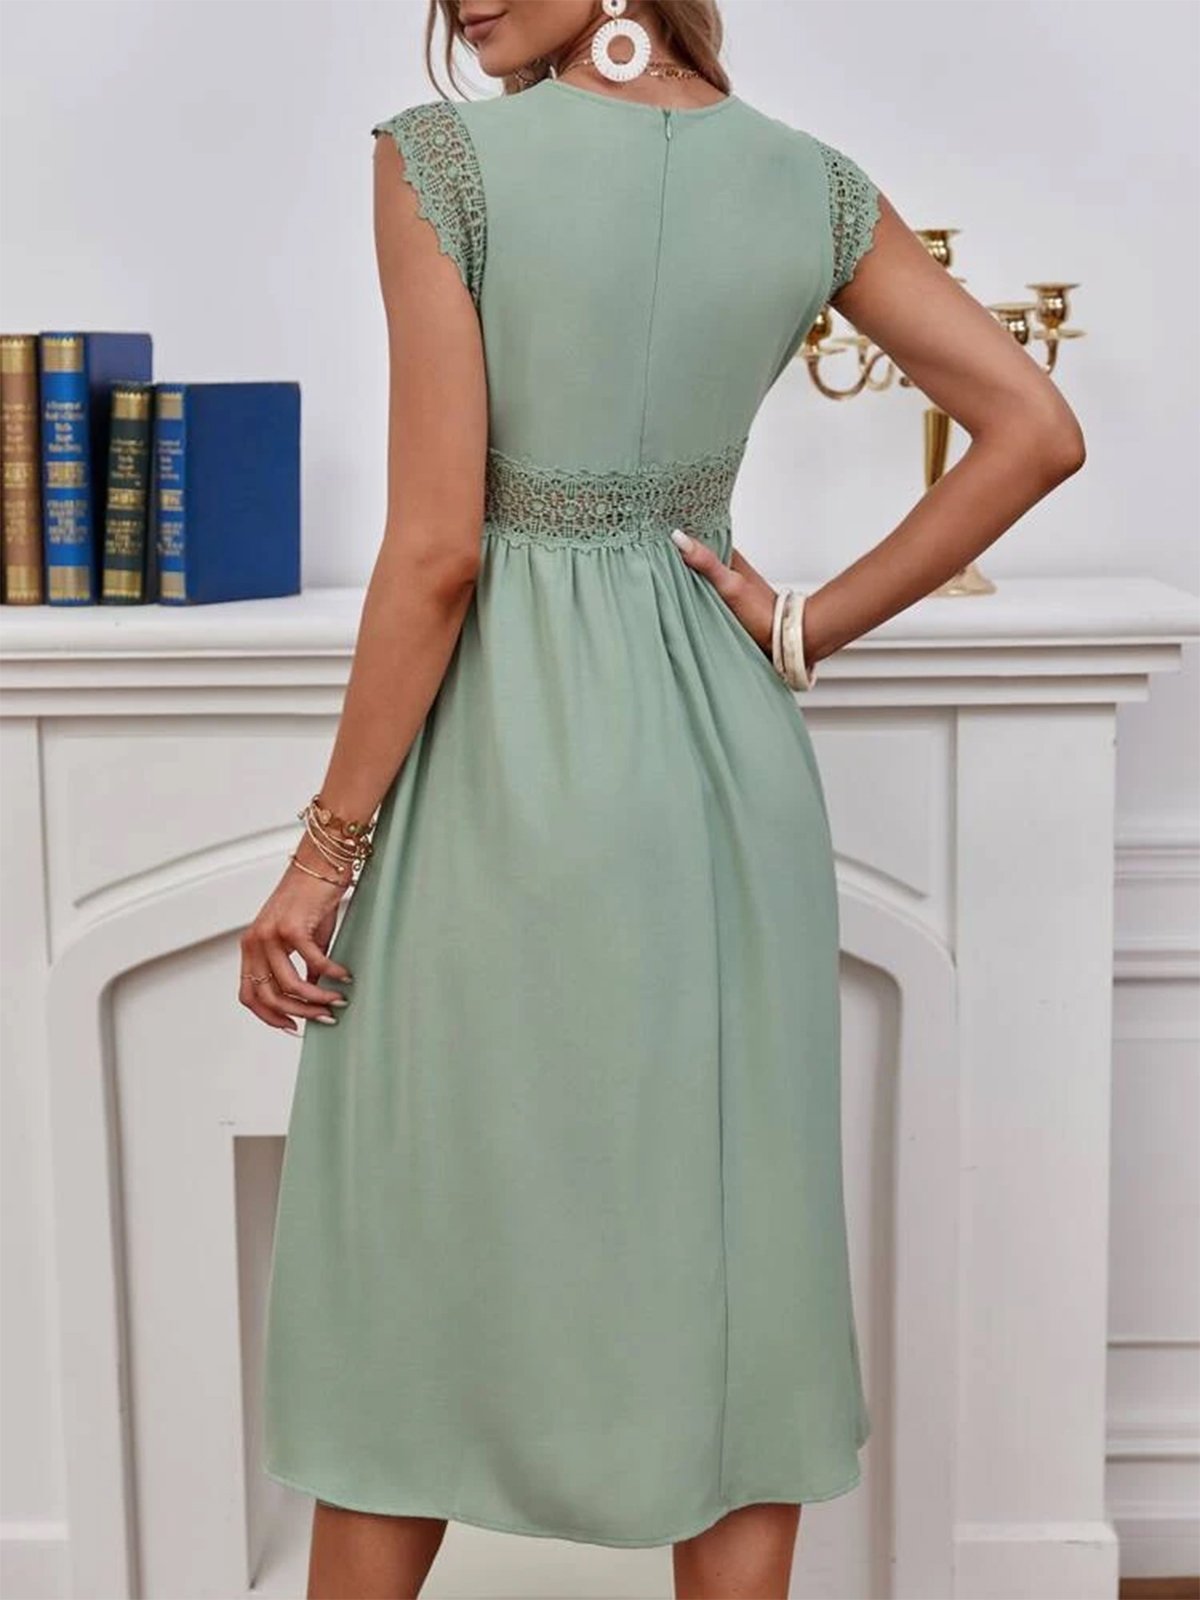 Unifarben Spitze V-Ausschnitt Elegant Kleid